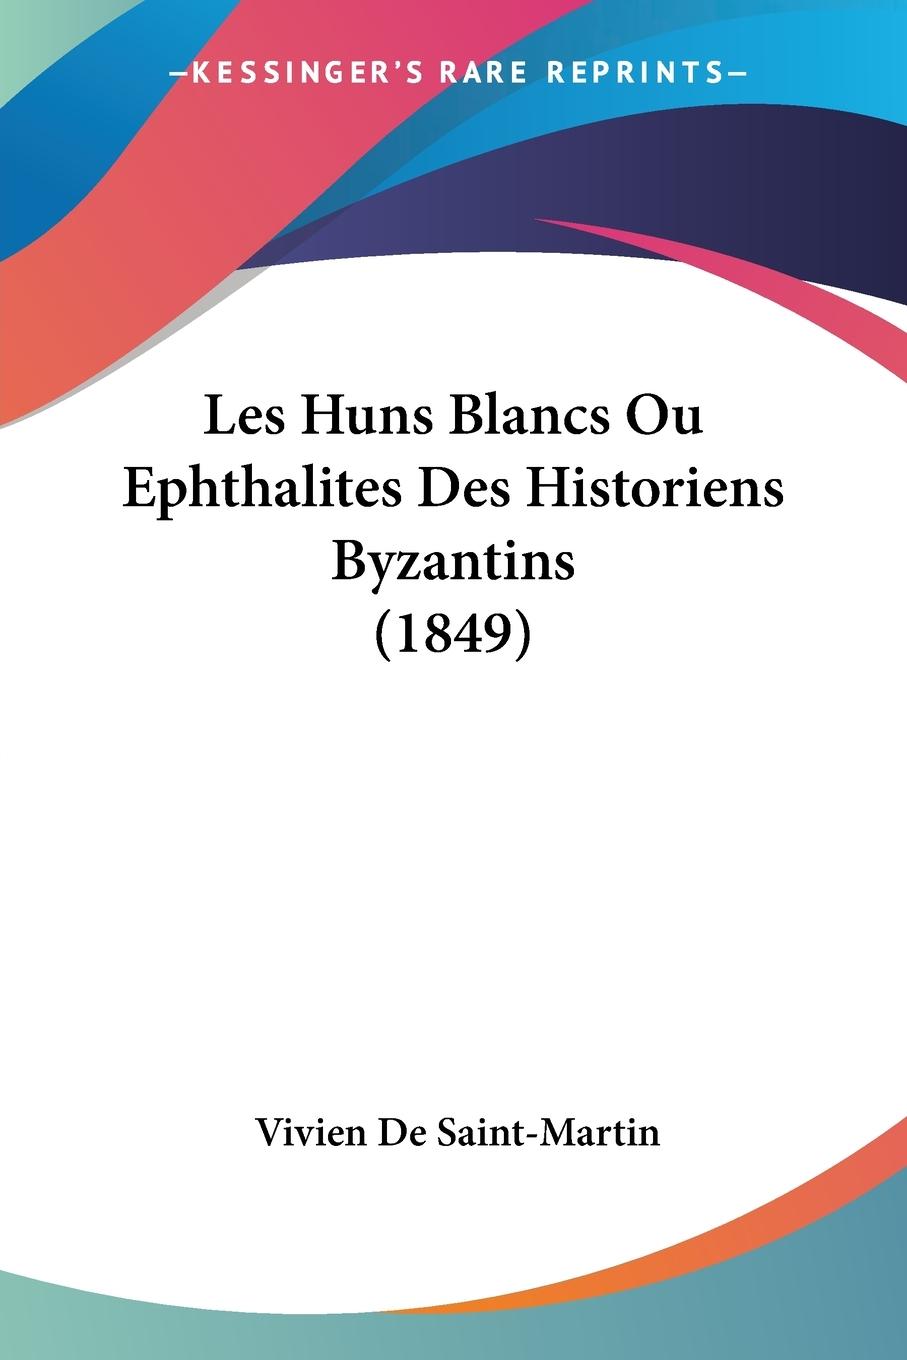 Les Huns Blancs Ou Ephthalites Des Historiens Byzantins (1849) - De Saint-Martin, Vivien